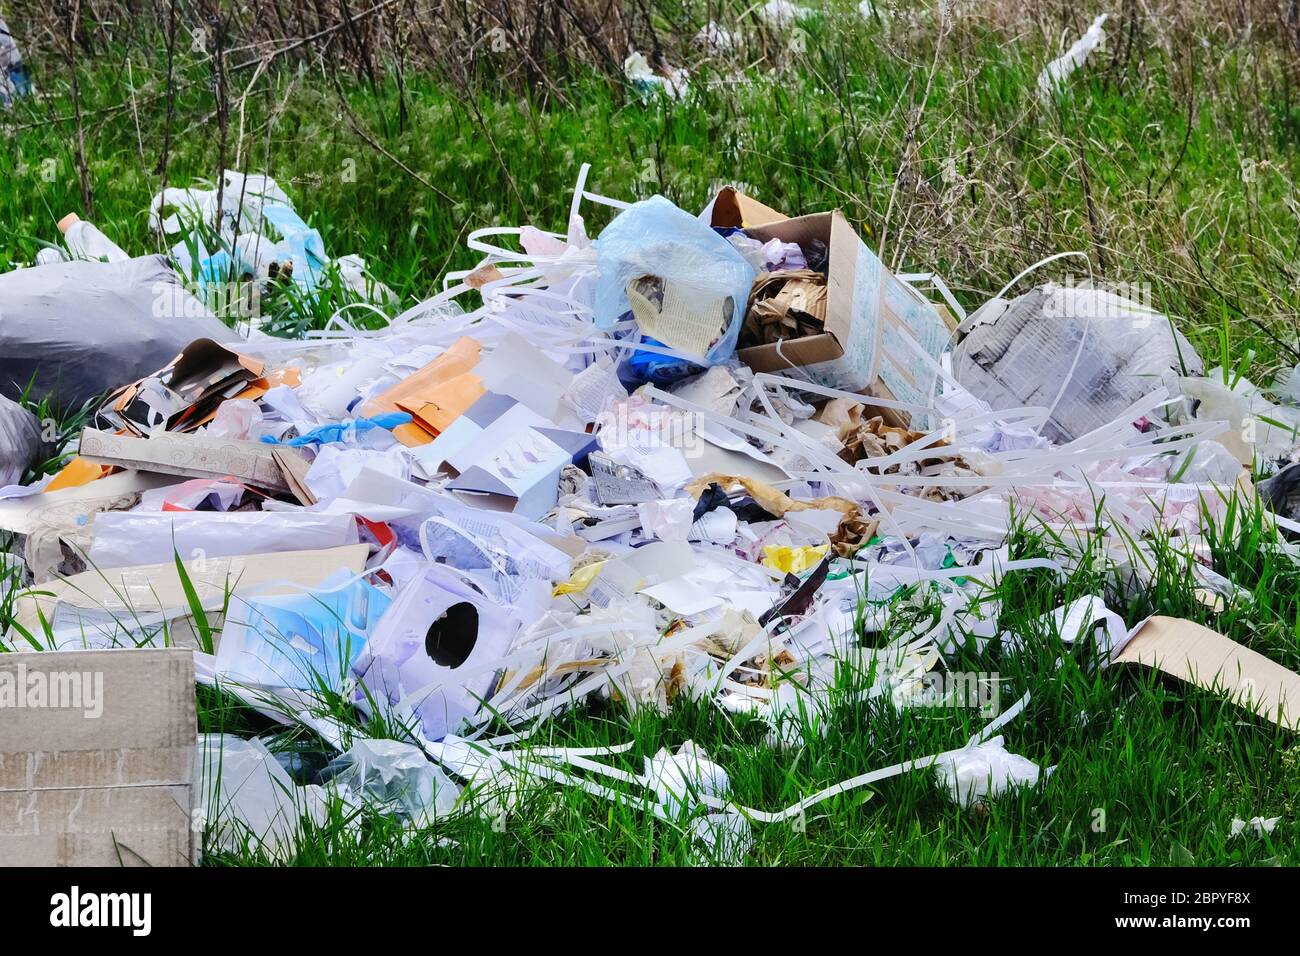 Les déchets de plastique et de papier sont en cours de défrichement dans la forêt, en gros plan. Contamination de la nature avec les déchets. Concept de pollution environnementale. Banque D'Images